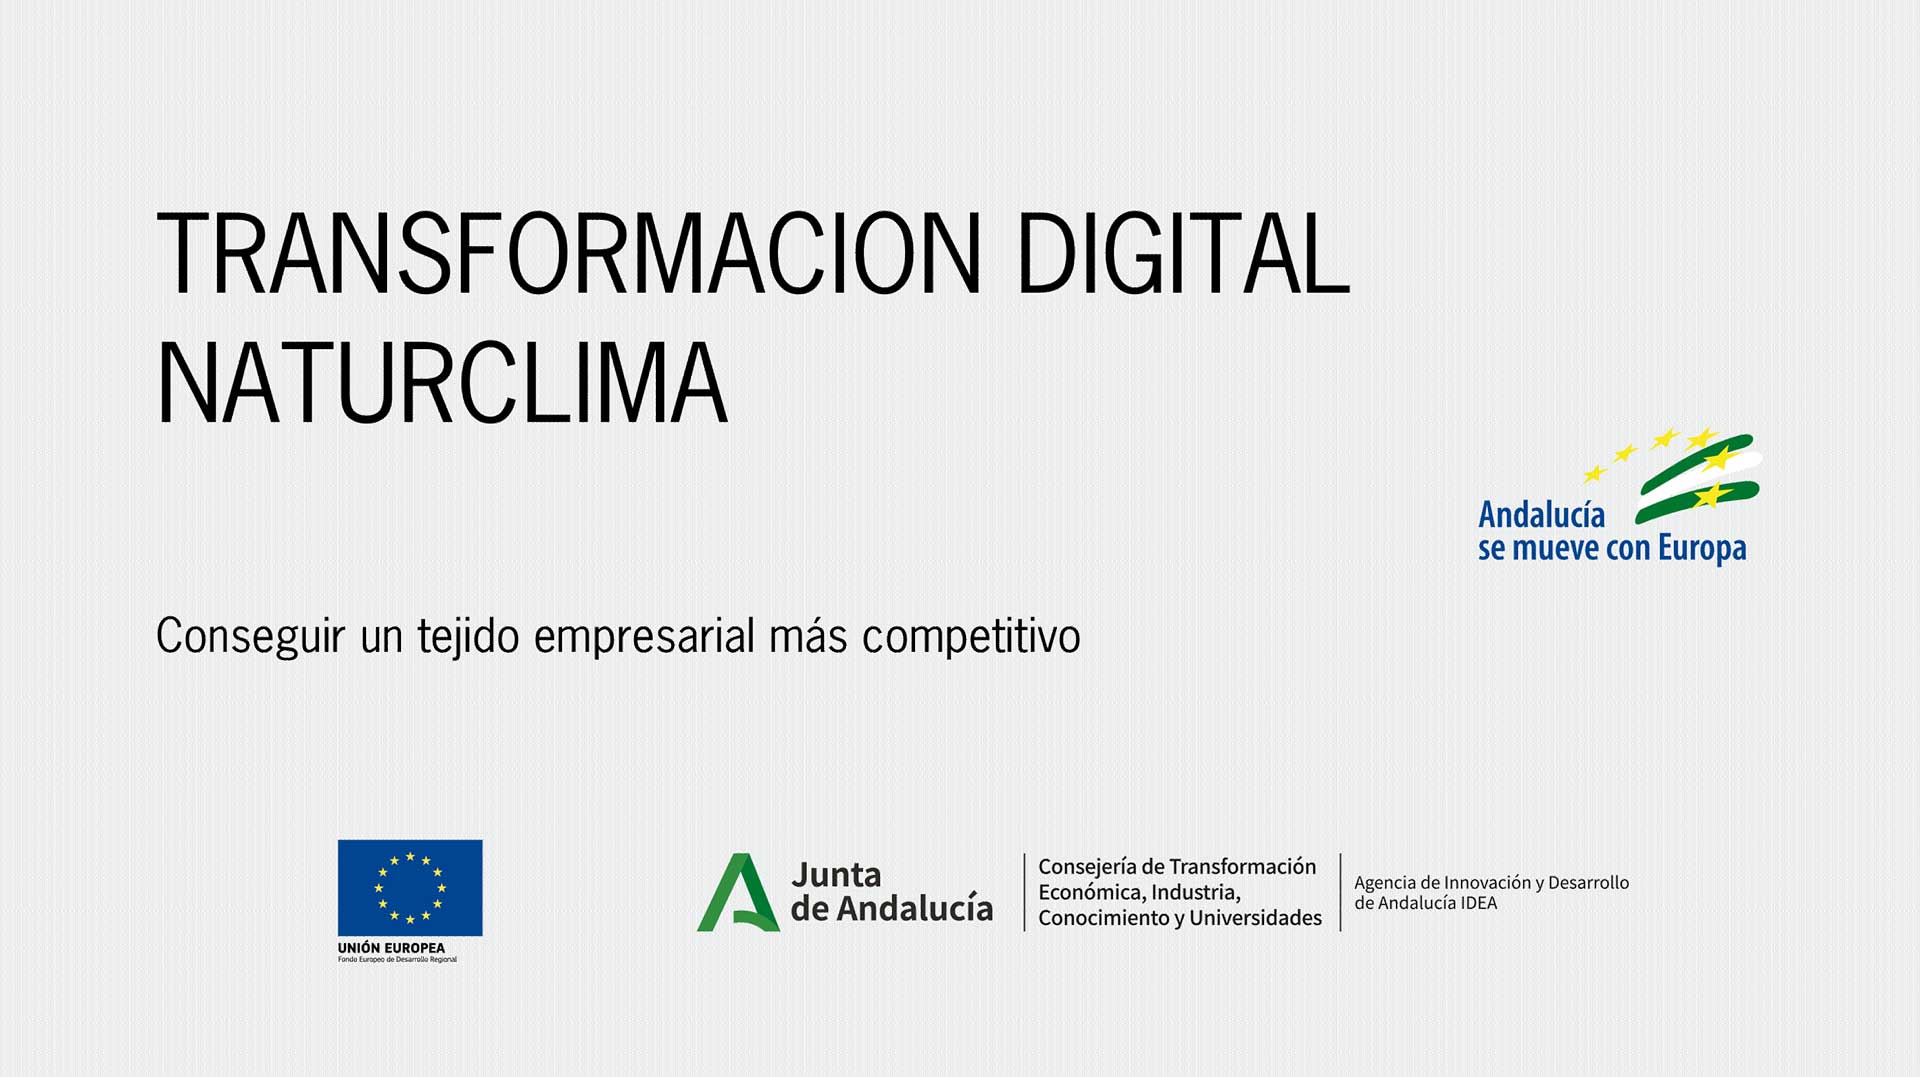 Transformación Digital Naturclima - Junta de Andalucía